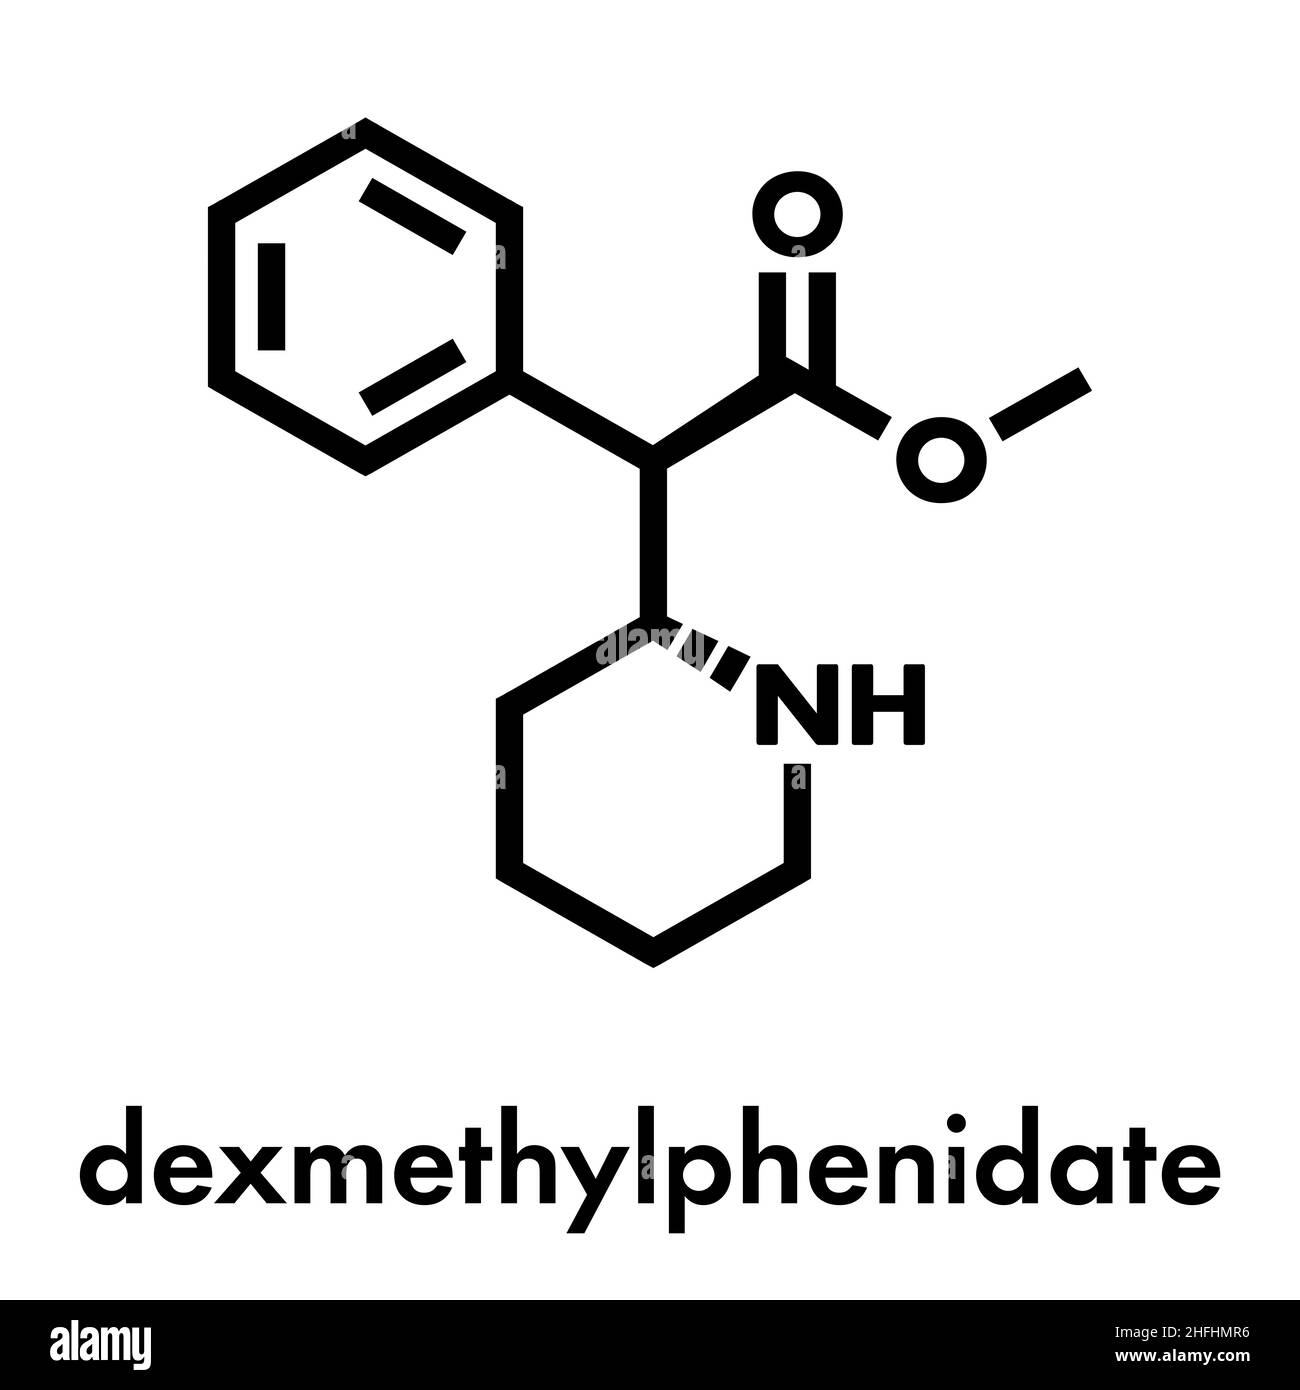 Dexmethylphenidate drug molecule. Skeletal formula. Stock Vector